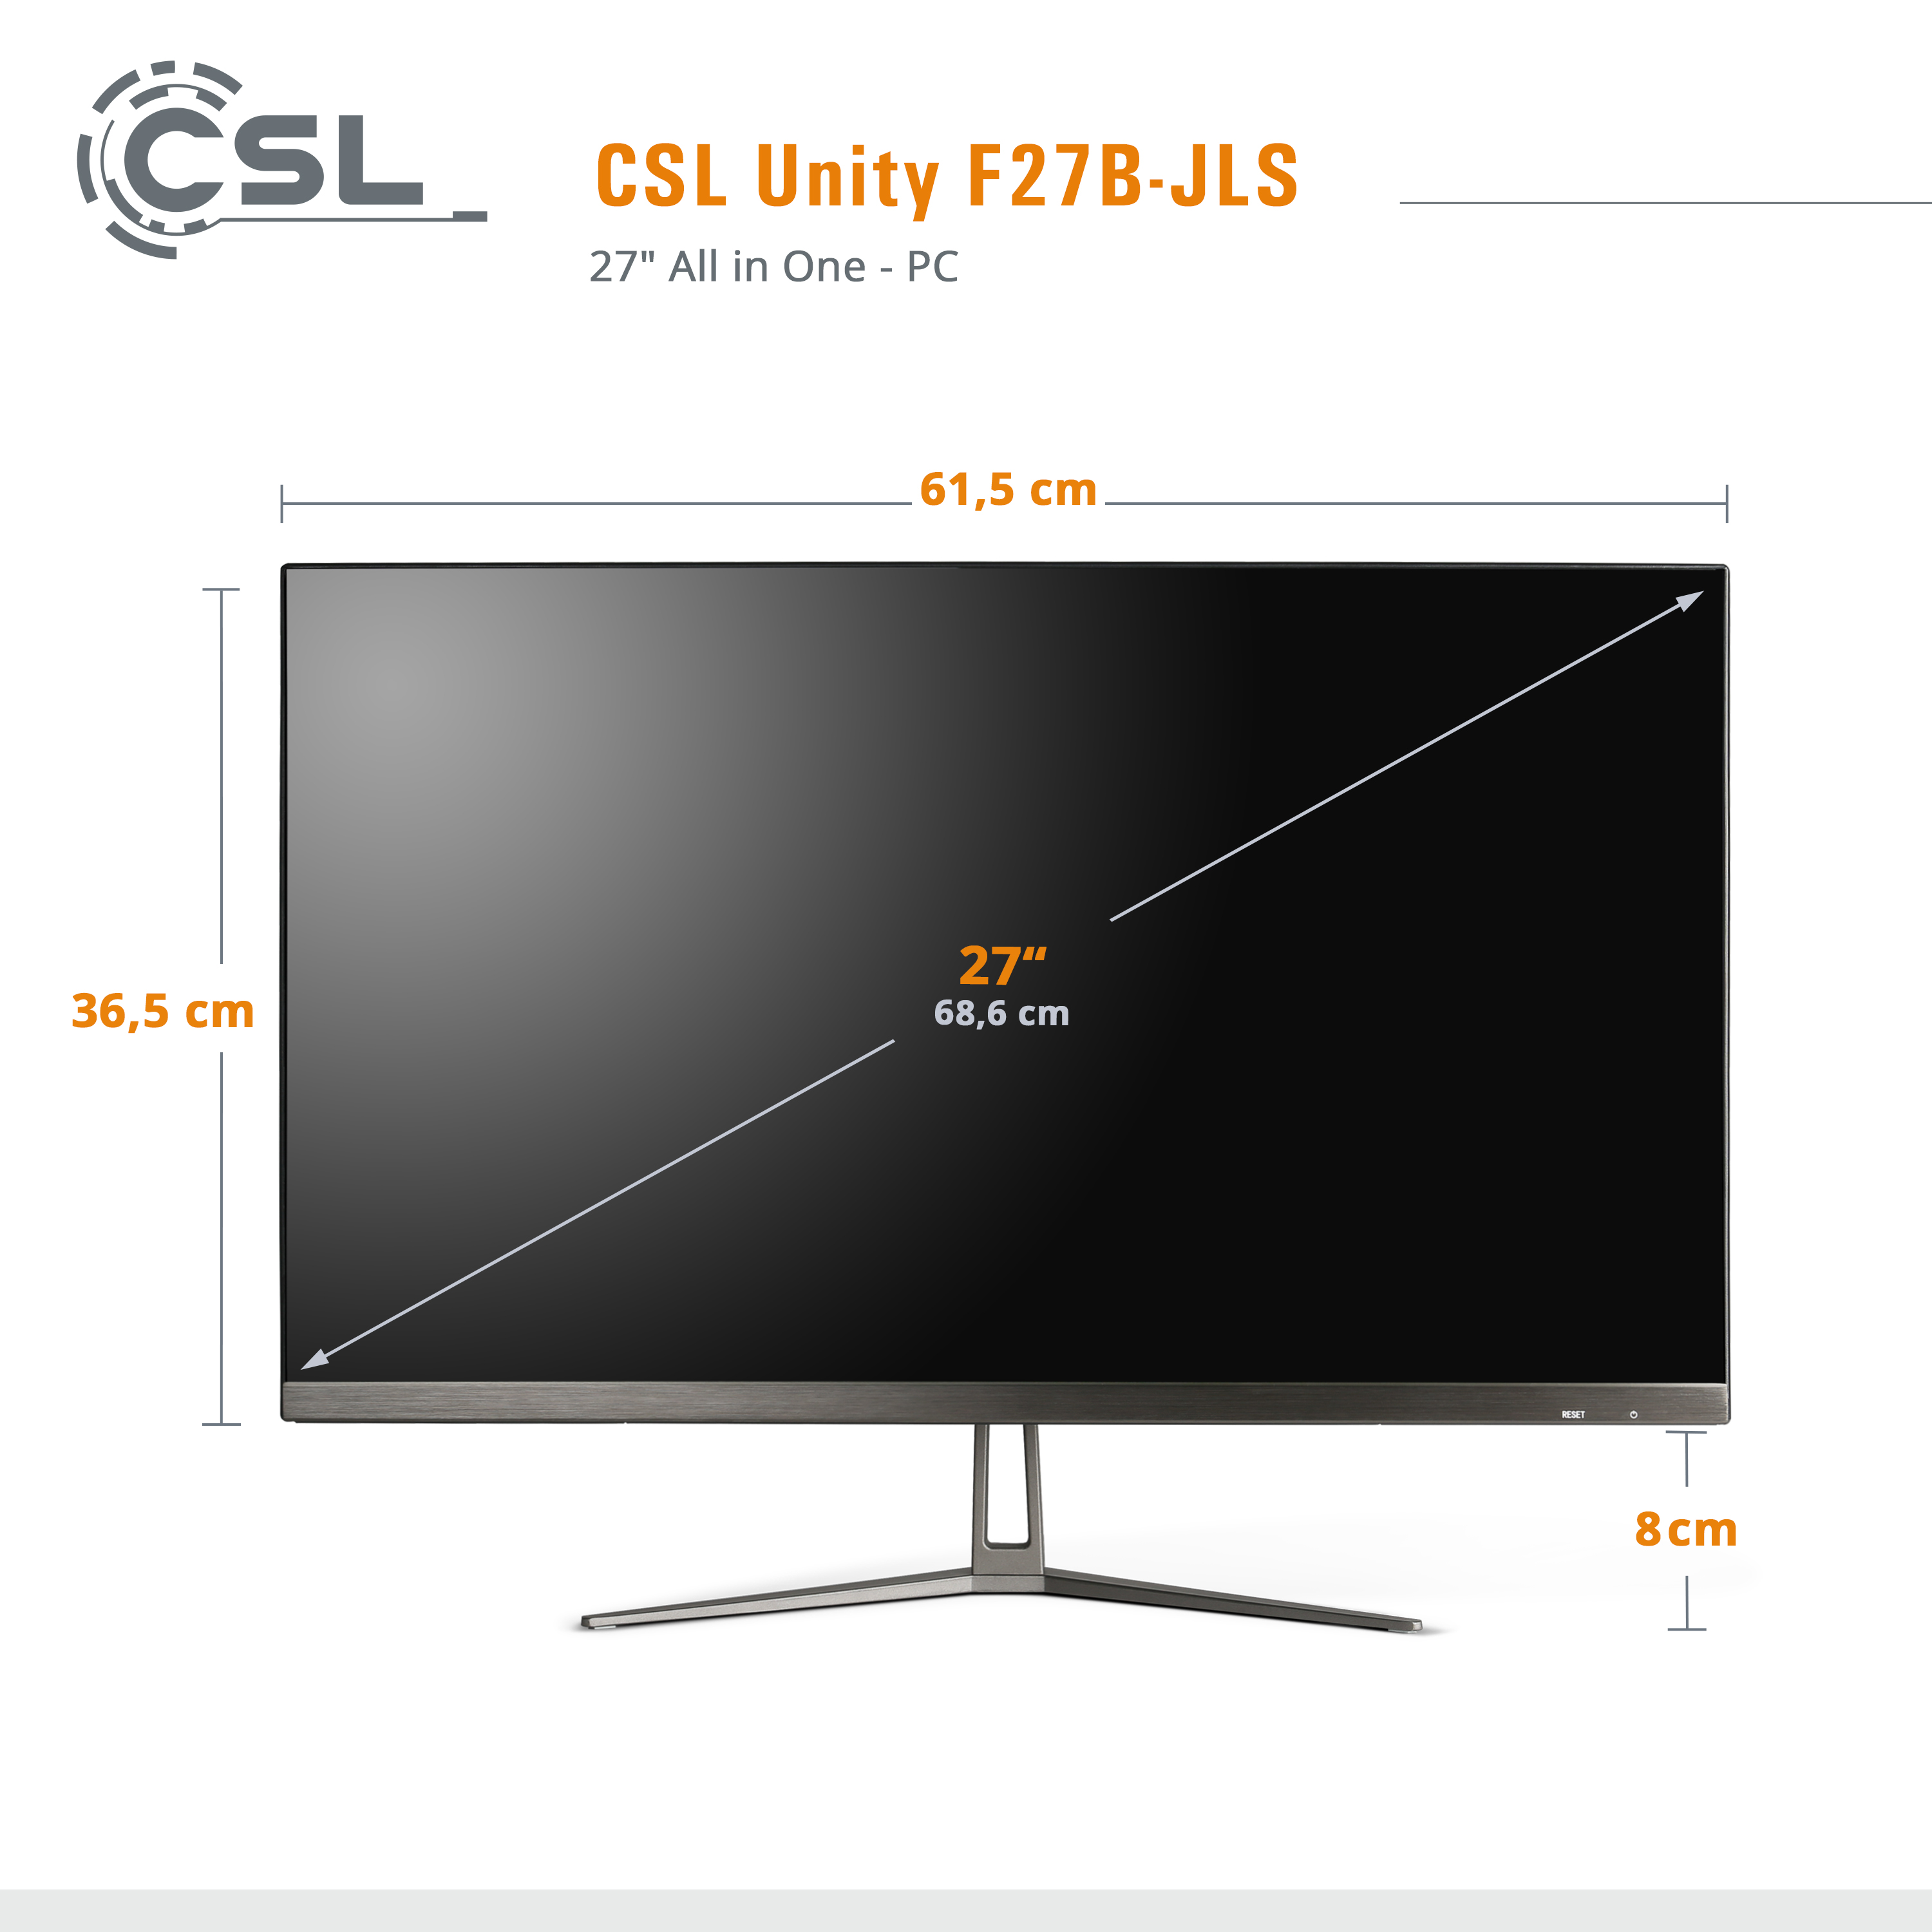 CSL Unity F27B-JLS RAM, schwarz / mit Home, 2000 11 / Win 8 GB Graphics, UHD Display, Intel® SSD, / Pentium GB All-in-One-PC 8 GB Zoll 2000 GB 27 RAM